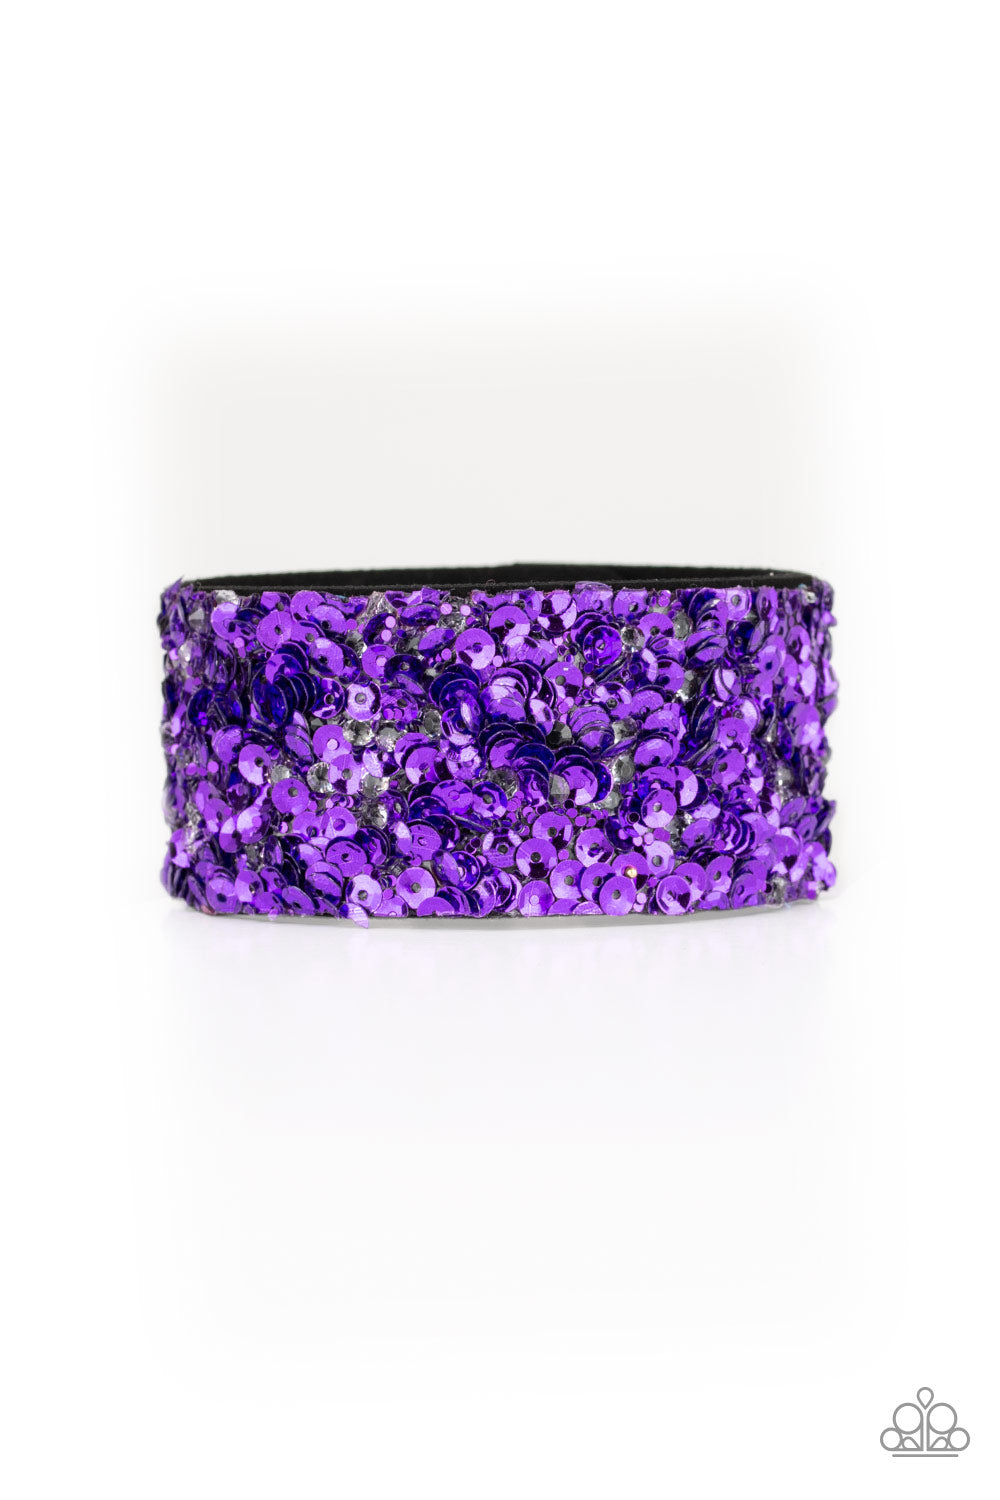 Paparazzi Accessories Starry Sequins - Purple Bracelet 